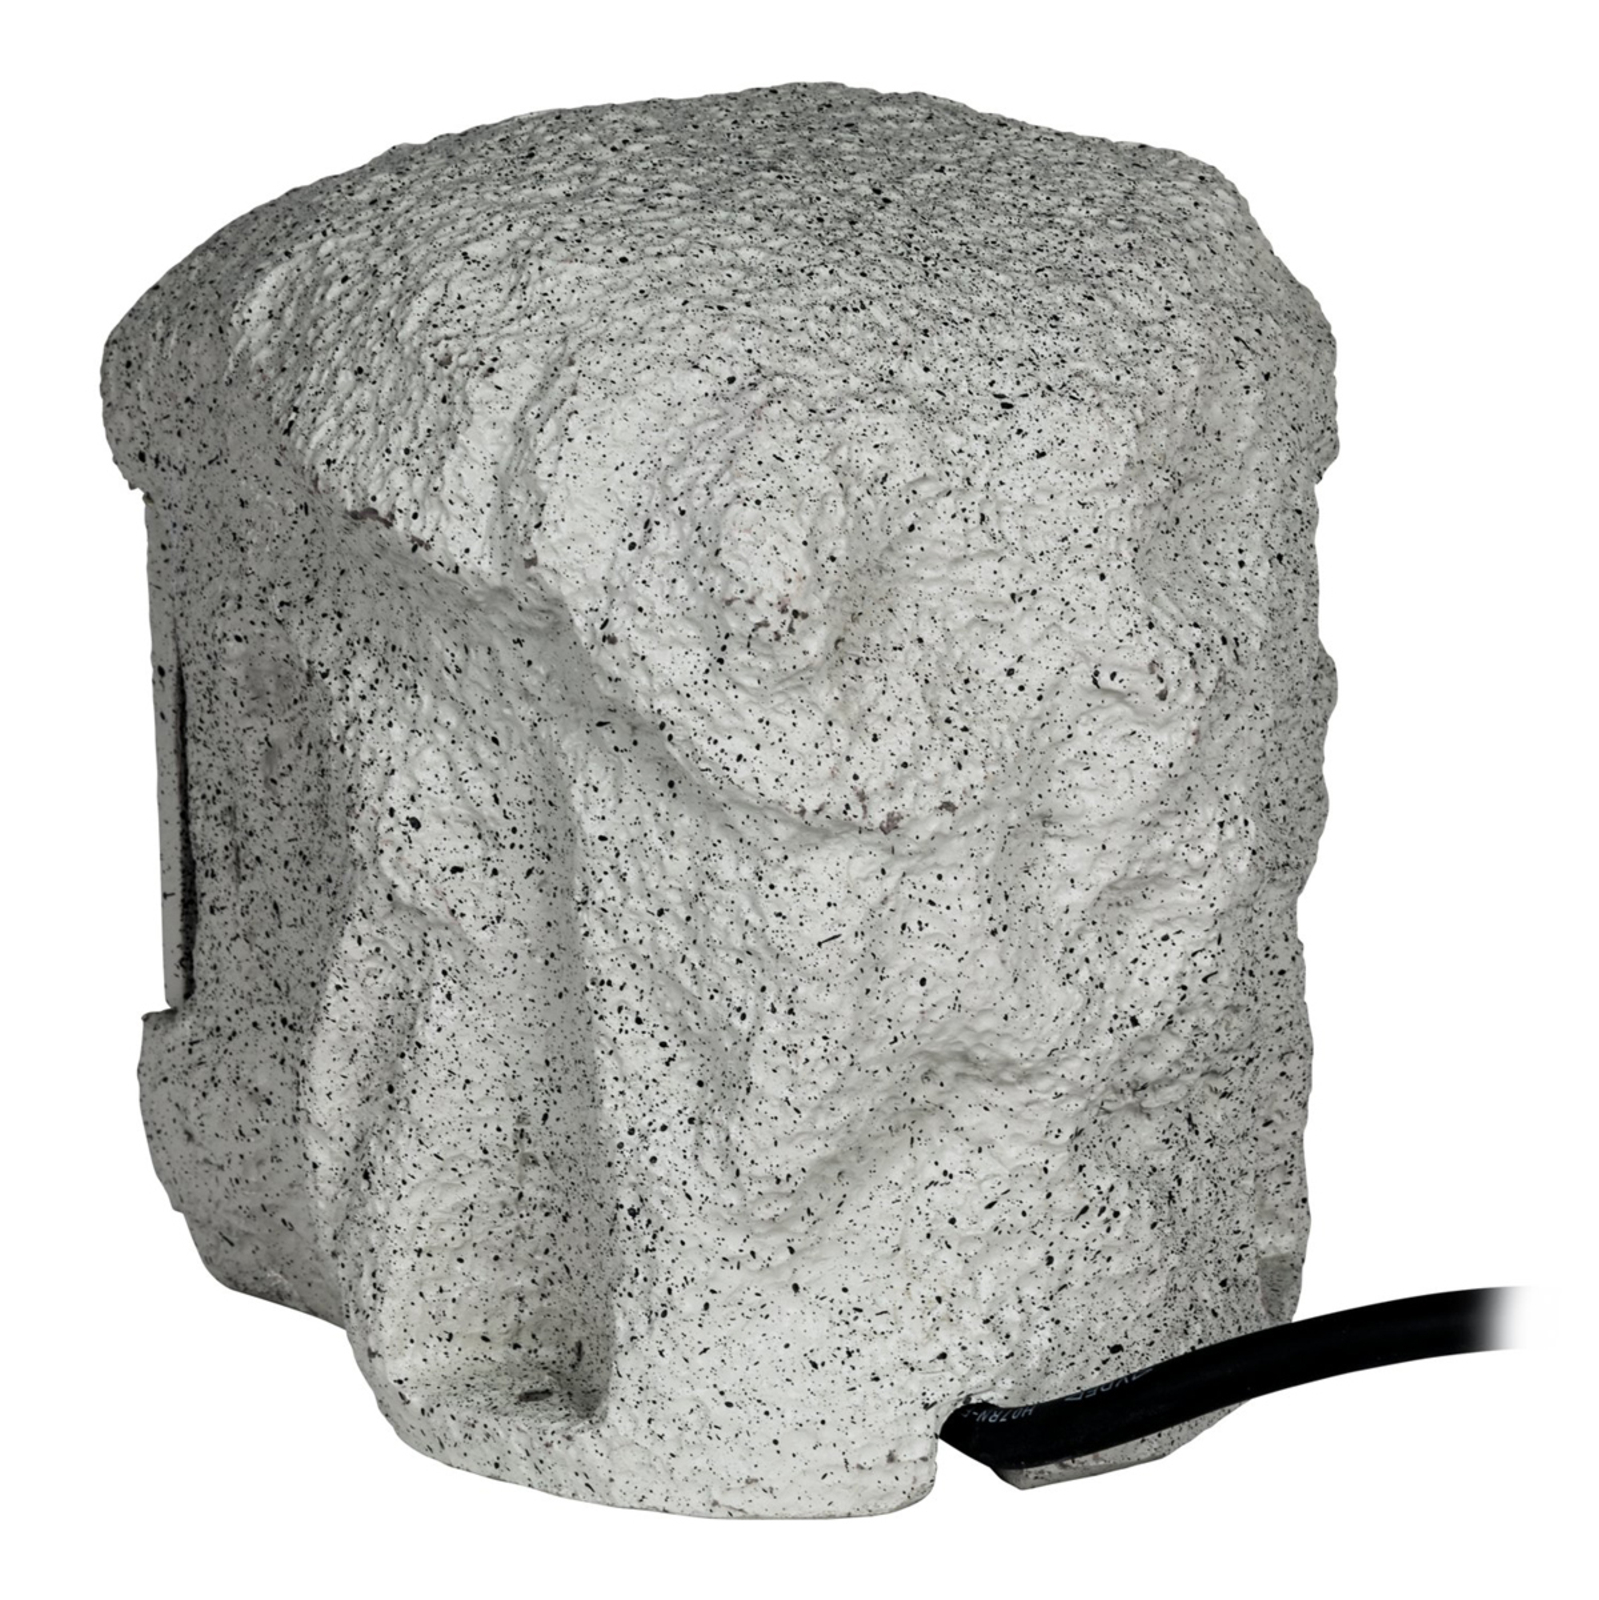 Energieverteiler Piedra in Granitoptik für außen